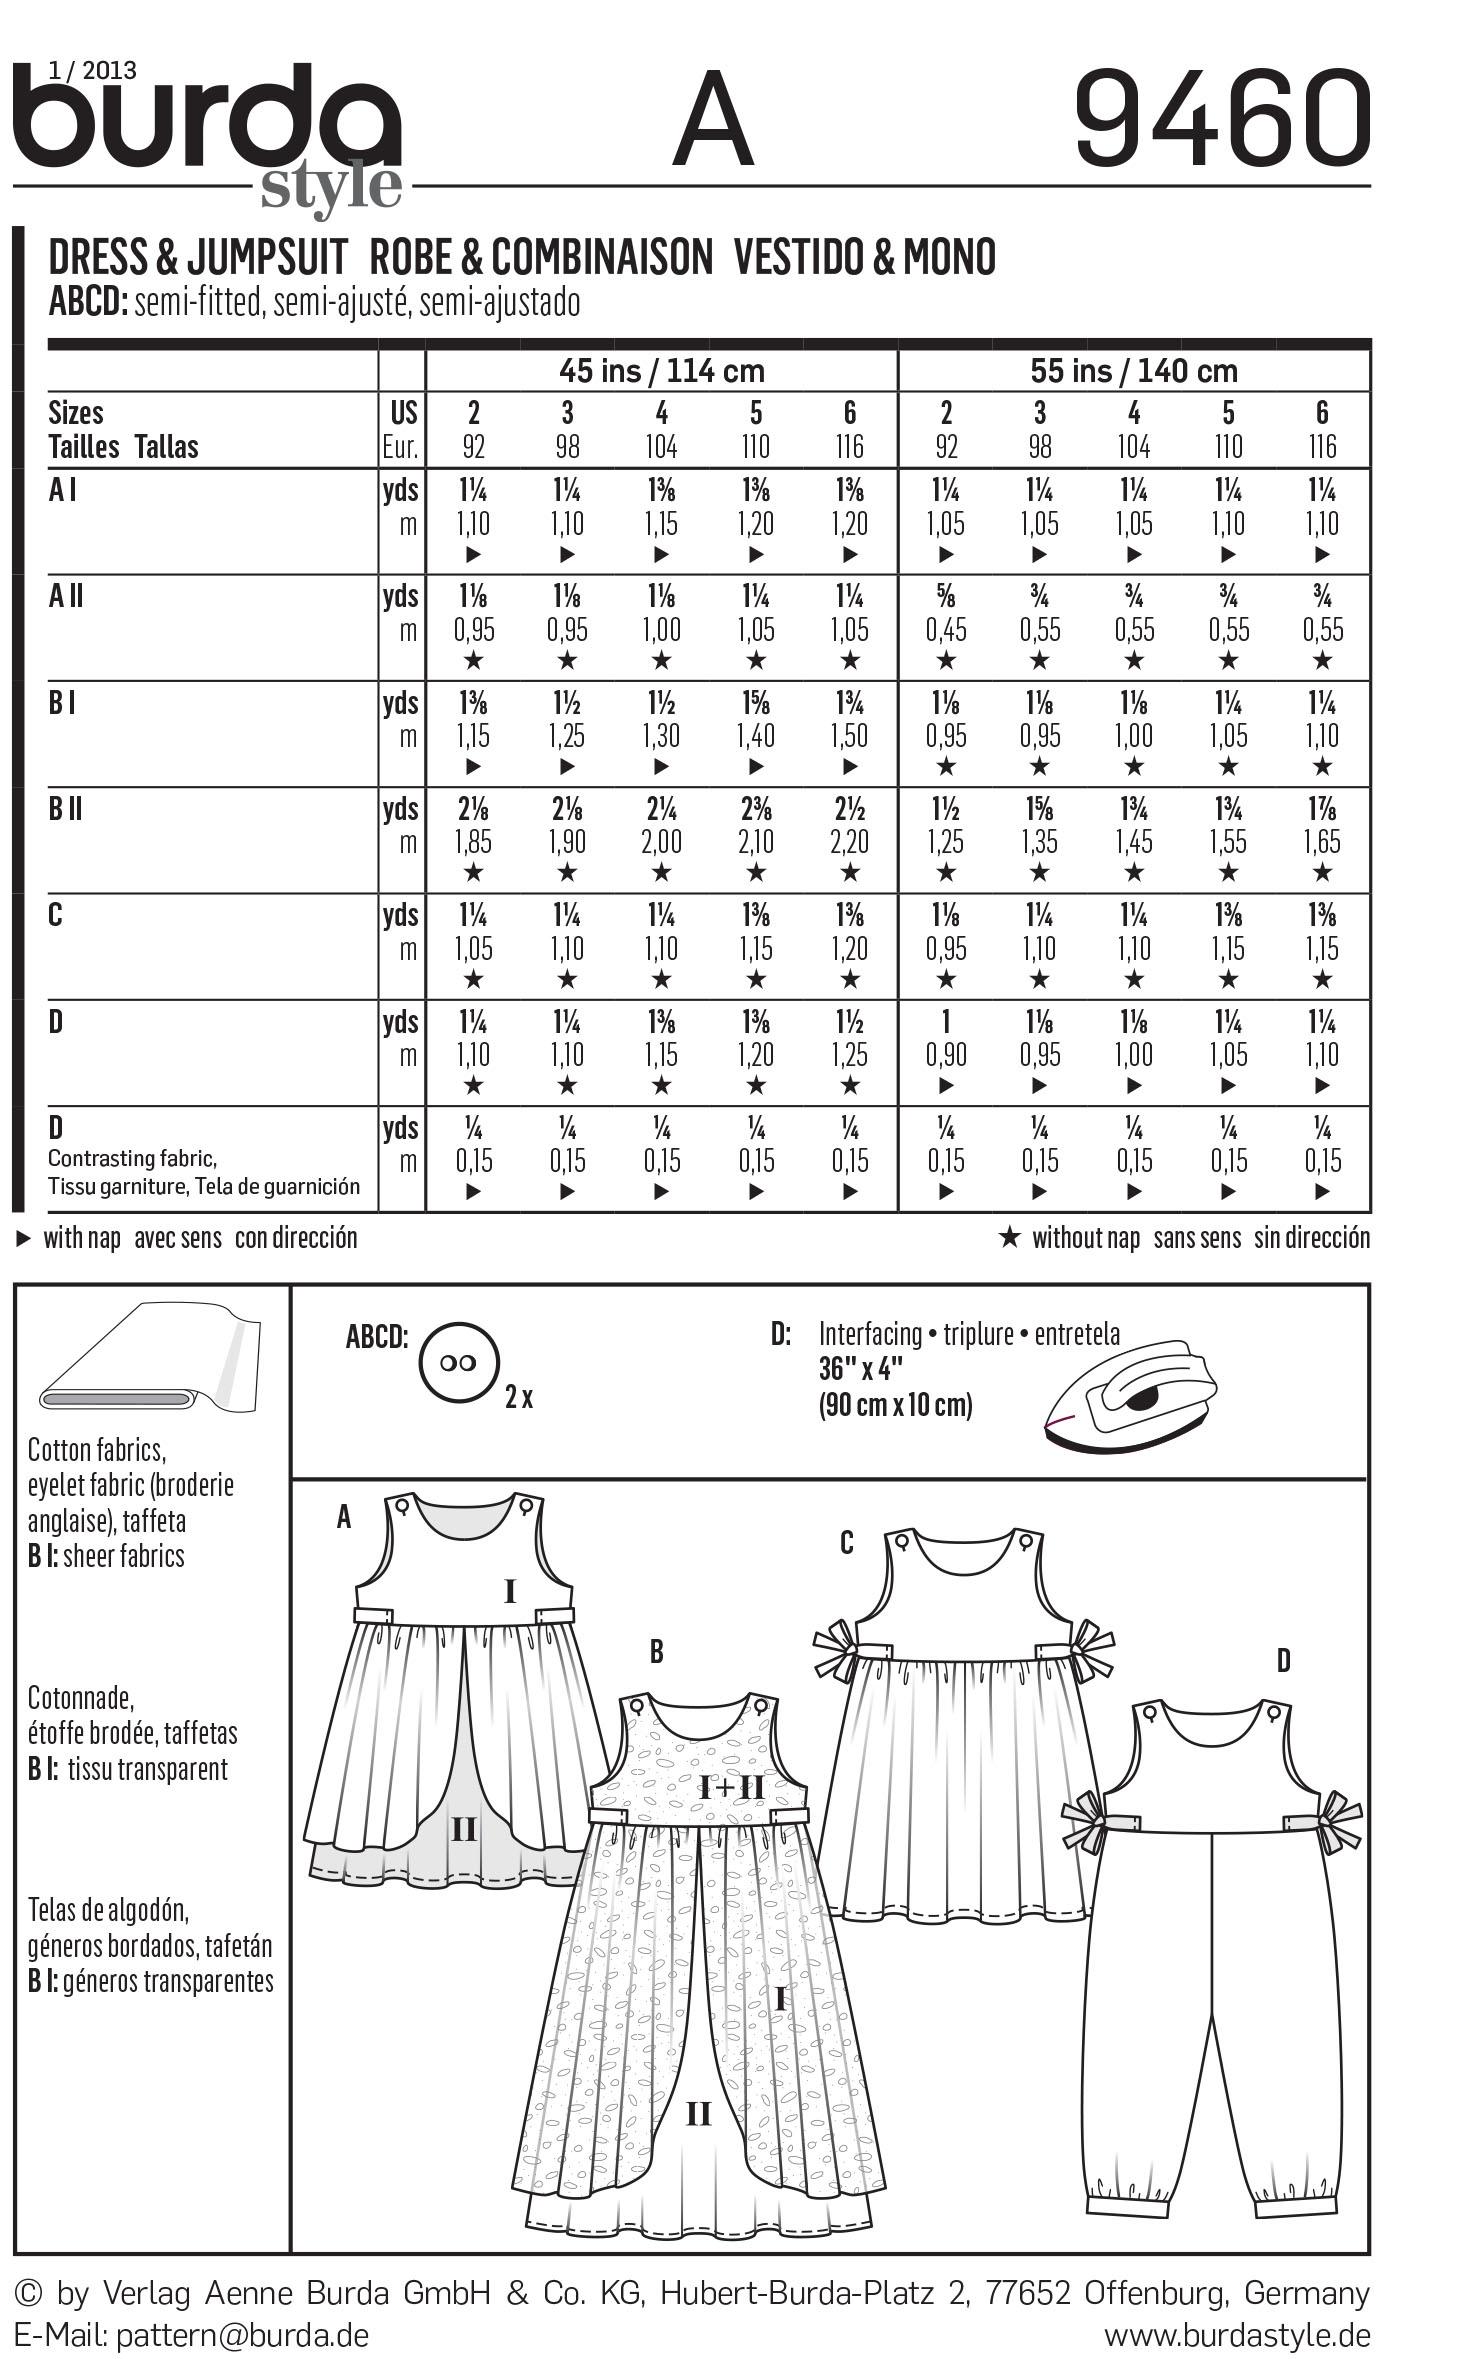 Burda B9460 Dress & Jumpsuit Sewing Pattern